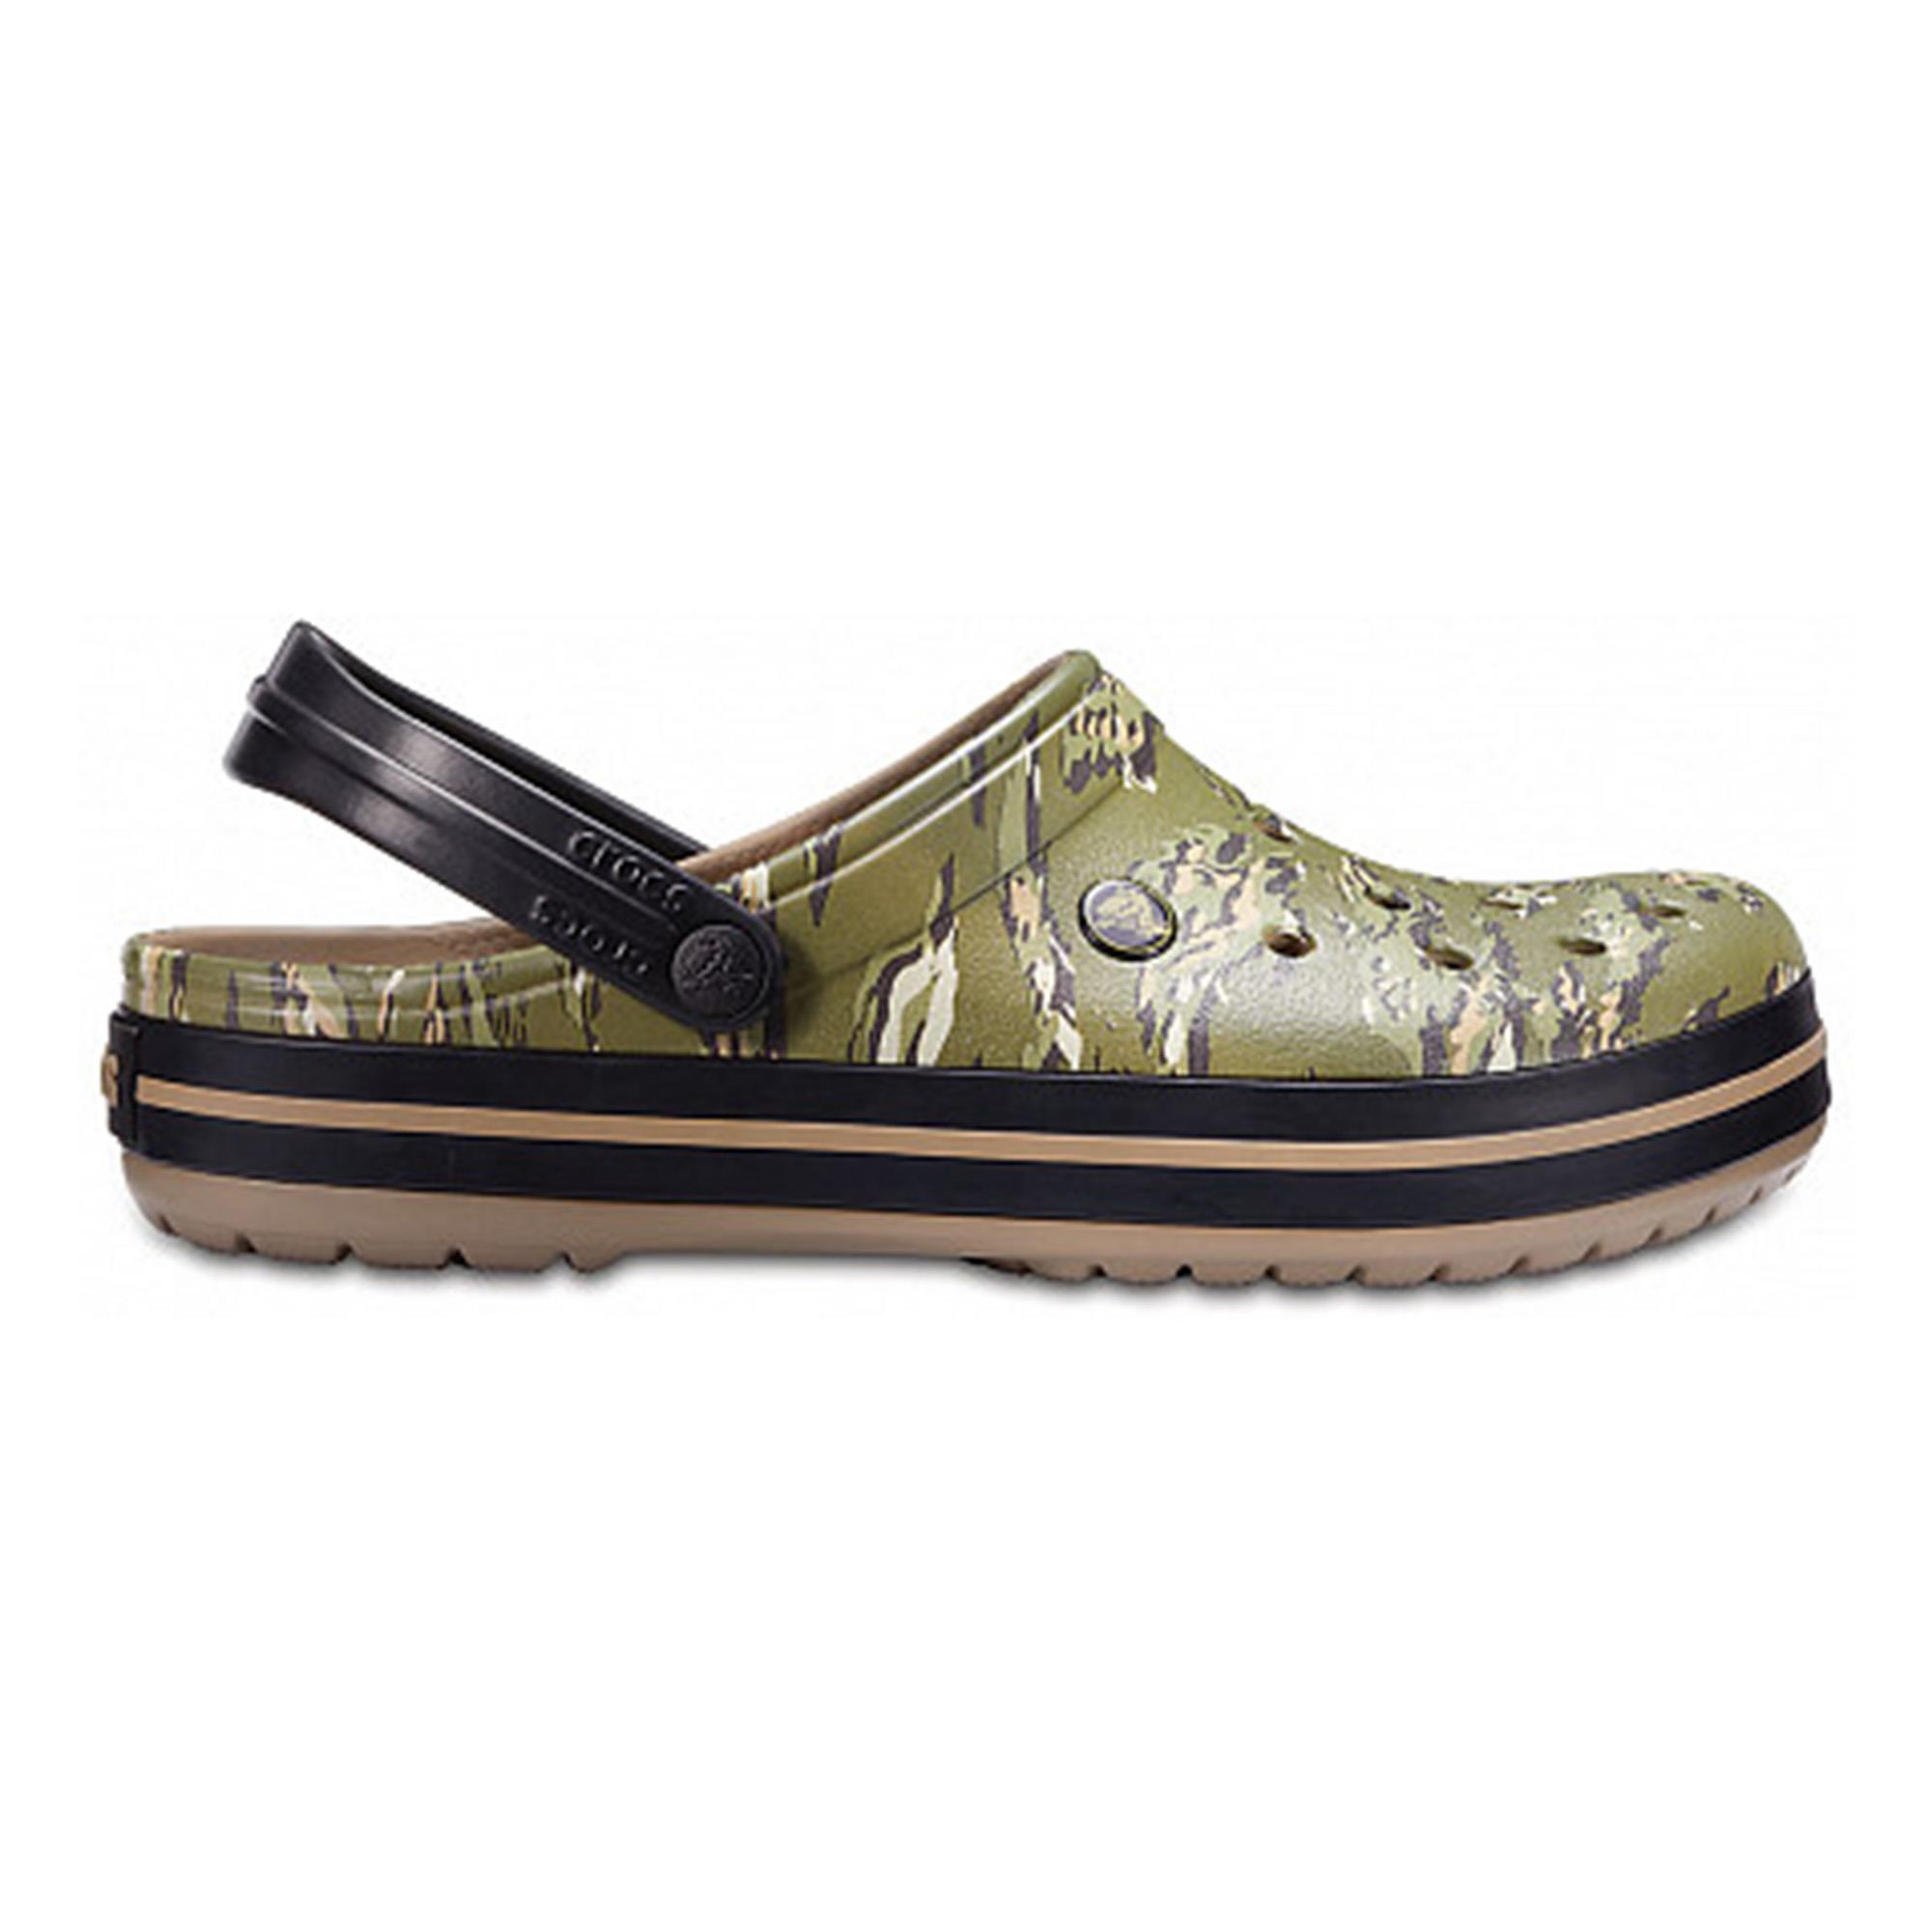 Crocband Graphic Clog Crocs, размер 39-40, цвет зеленый CR204553 - фото 1